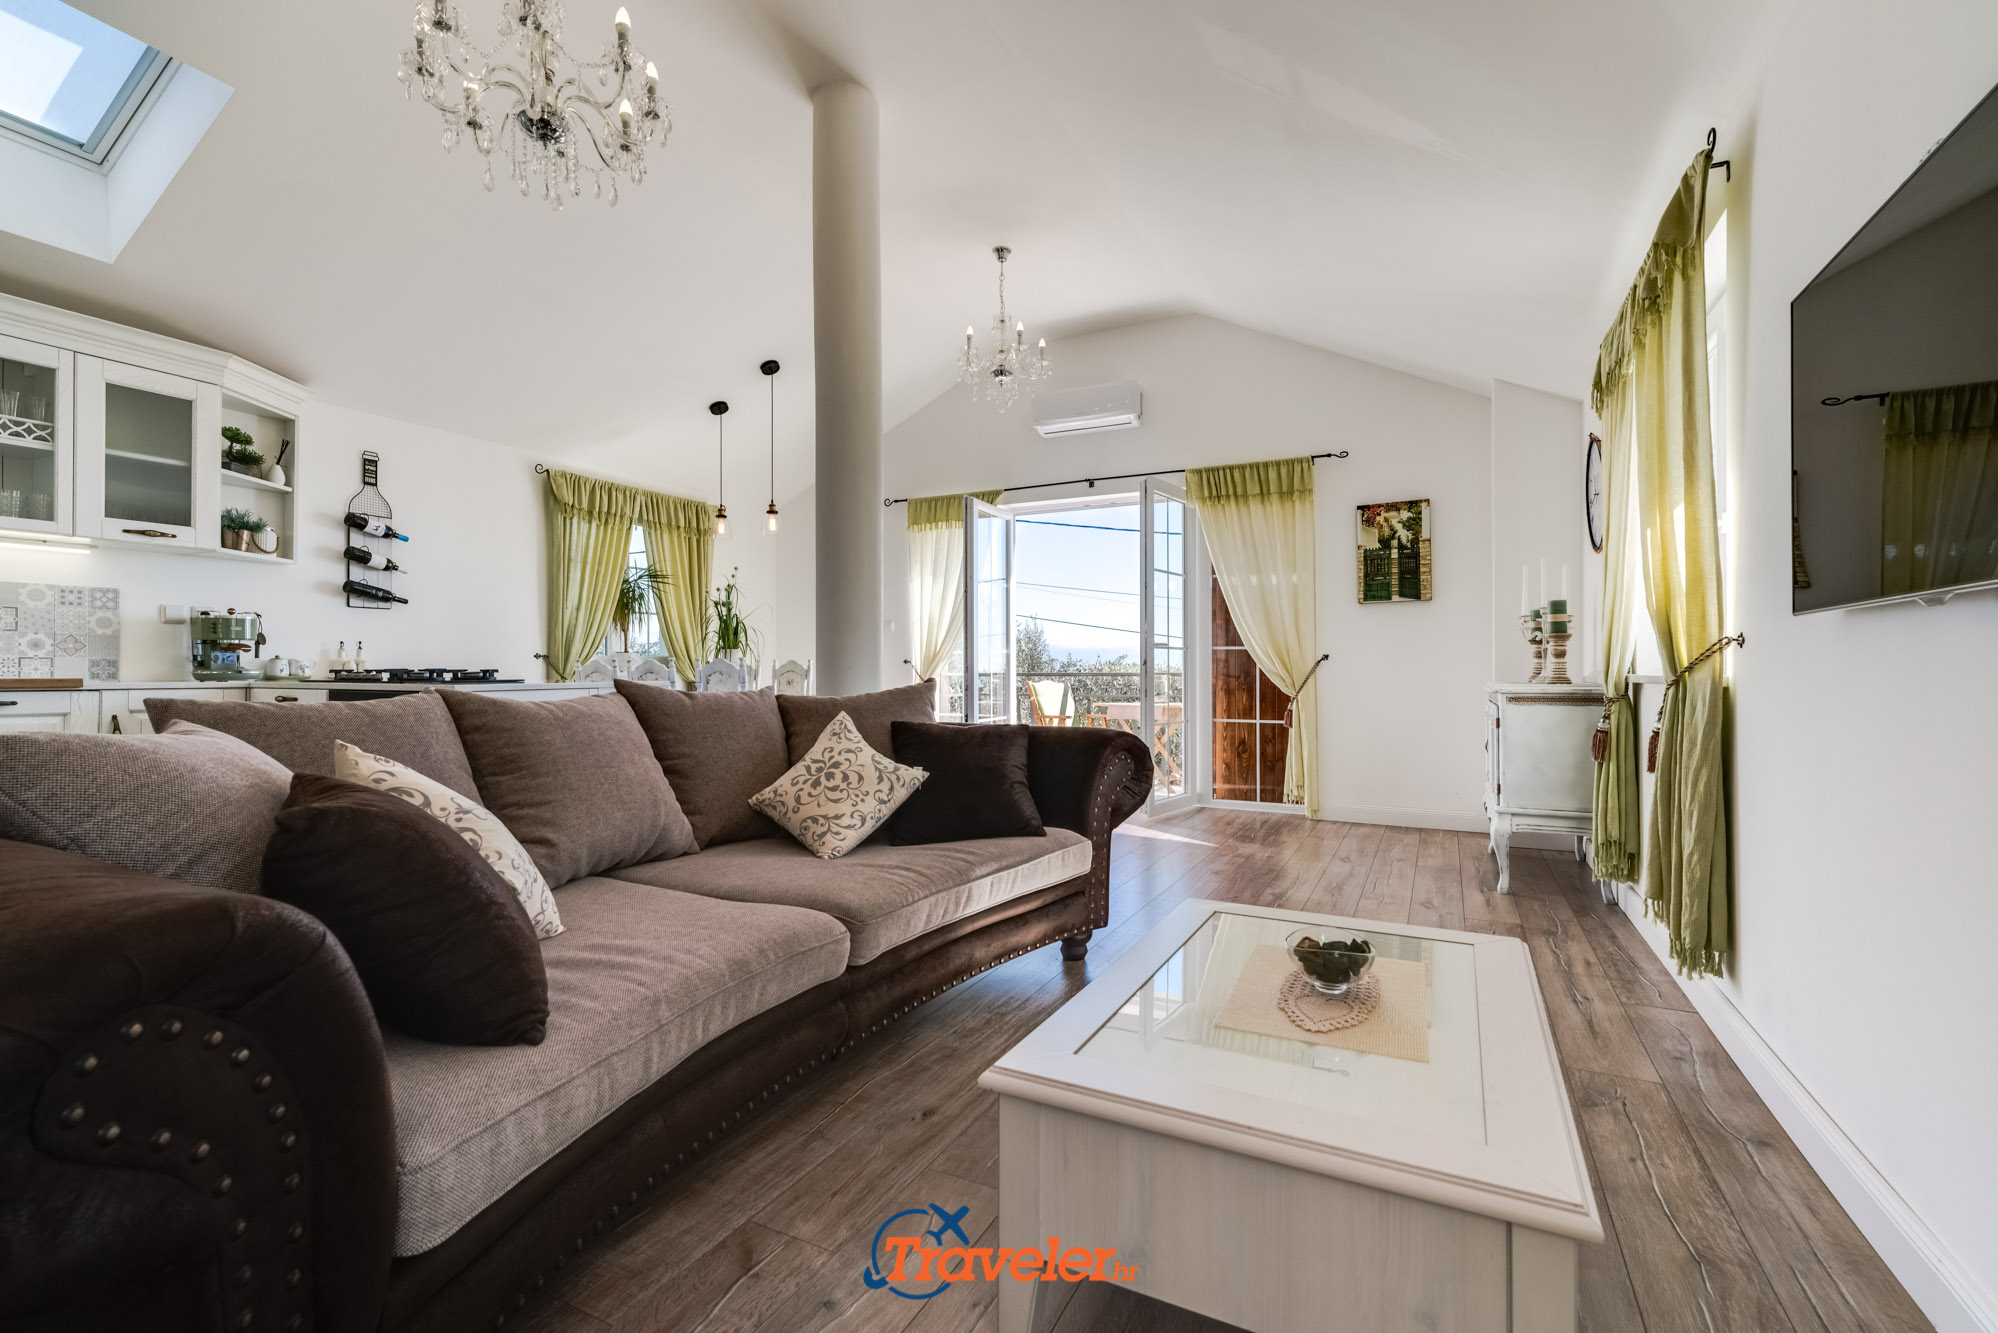 Ferienvilla mit Pool in Kroatien, Wohnzimmer mit braunem Sofa und Fernseher